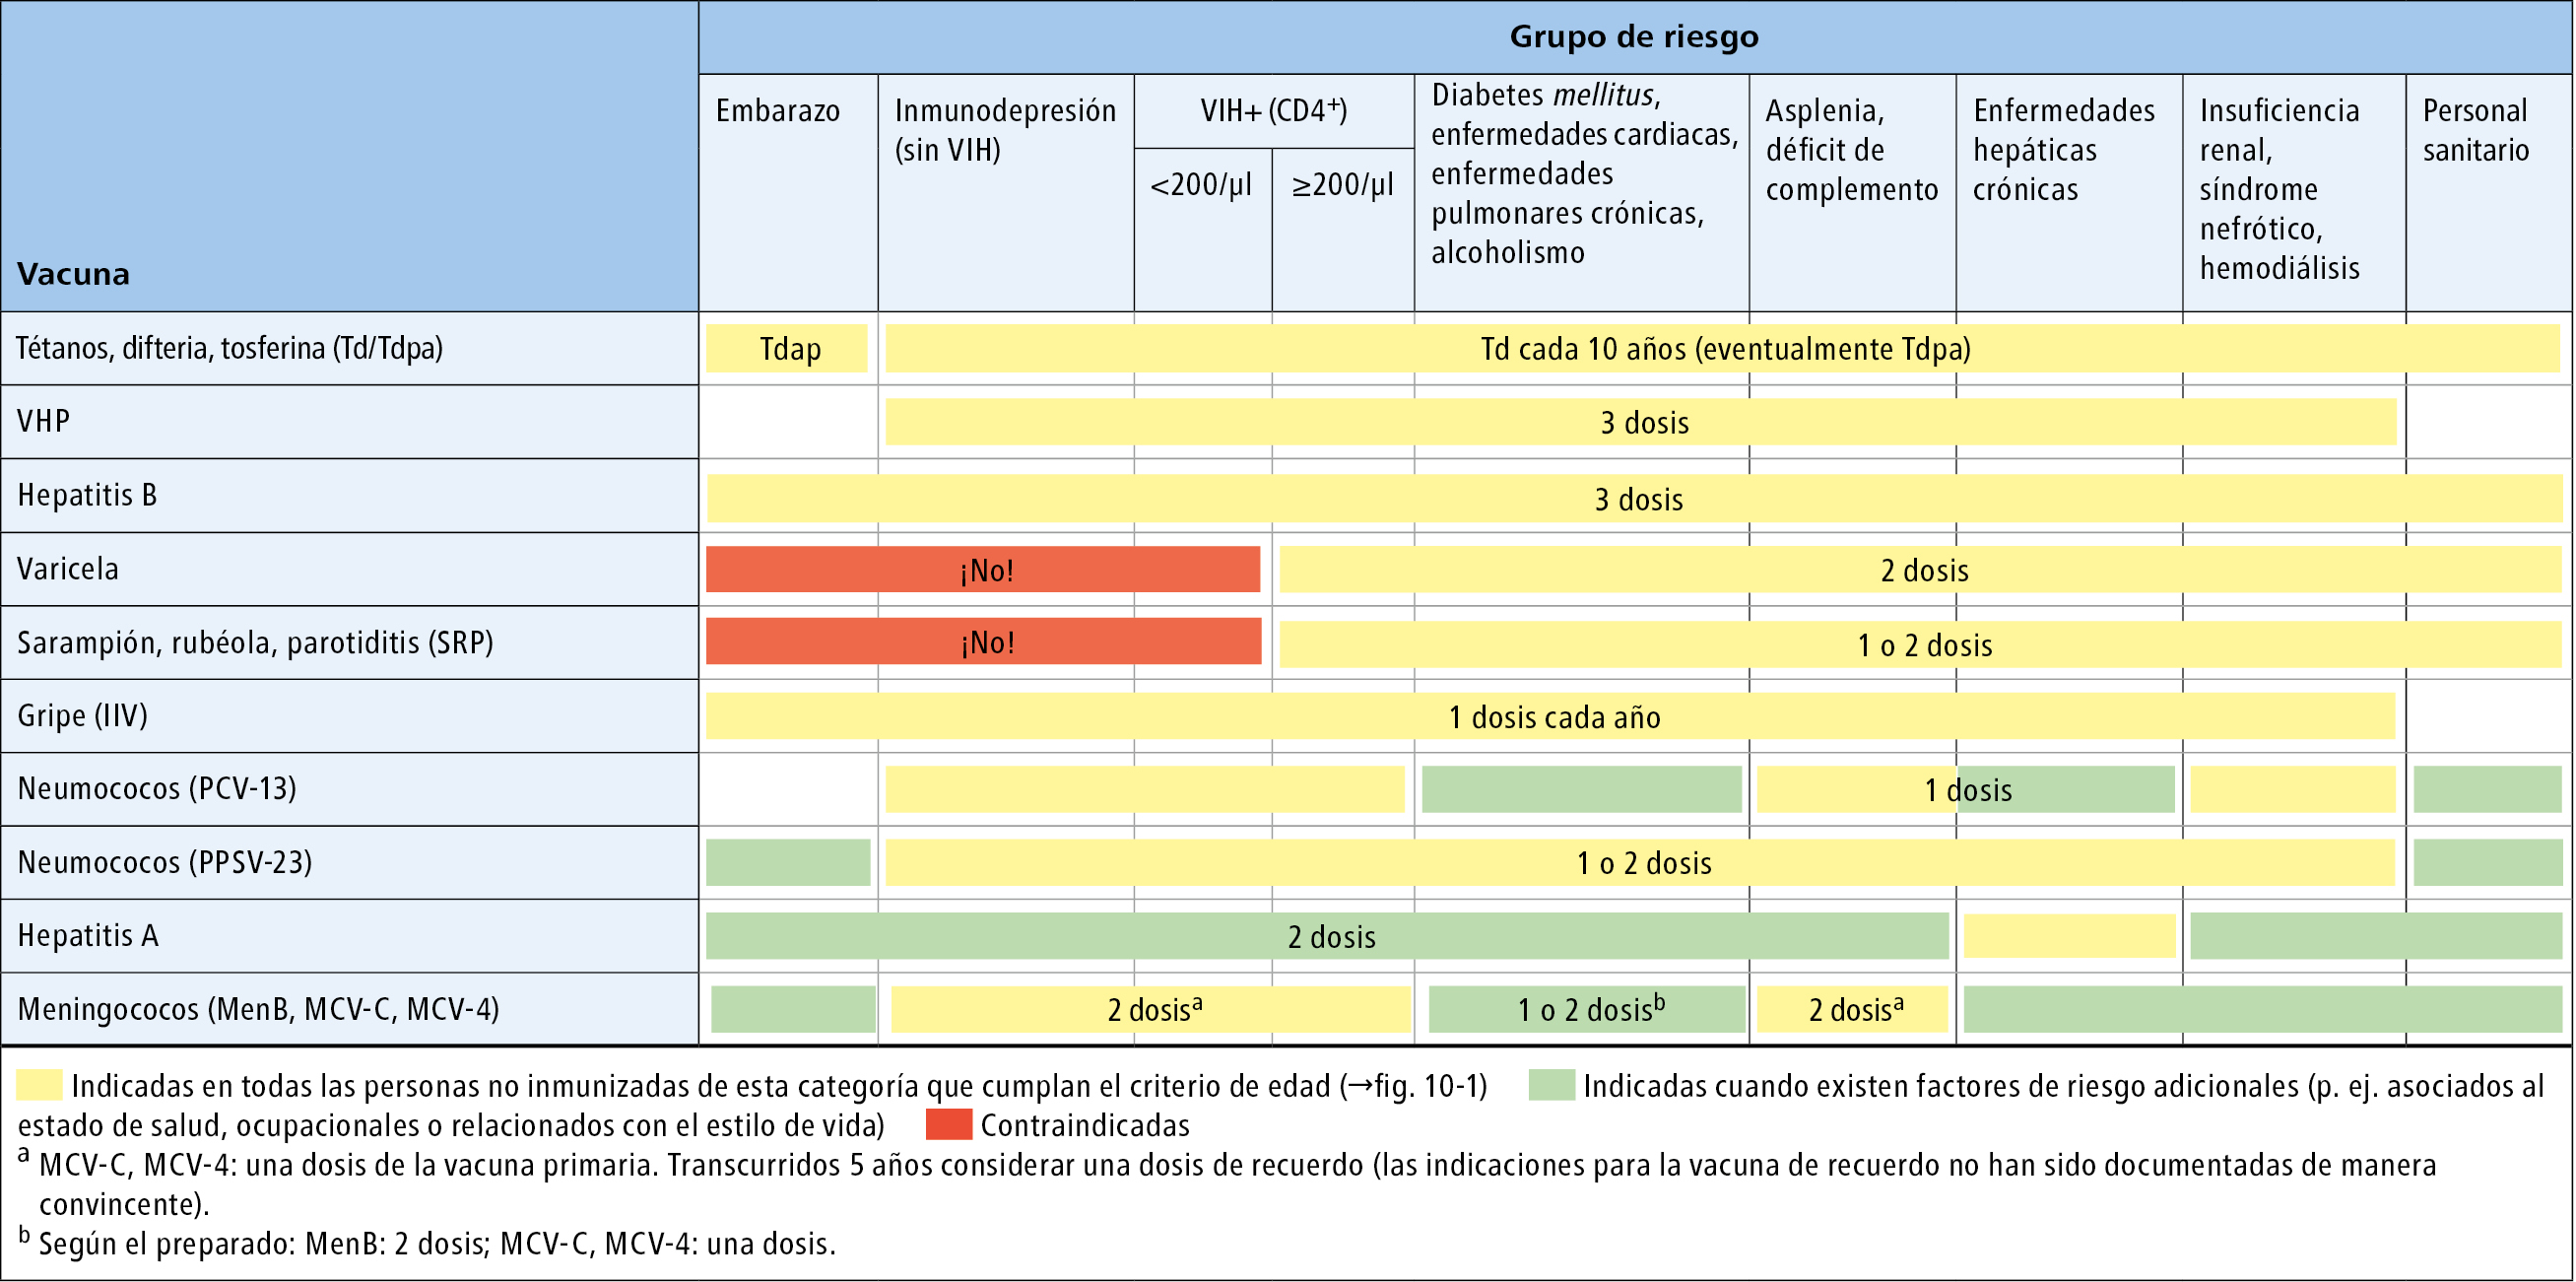  Esquema del programa de vacunación para adultos, según el grupo de riesgo (información detallada →texto) 